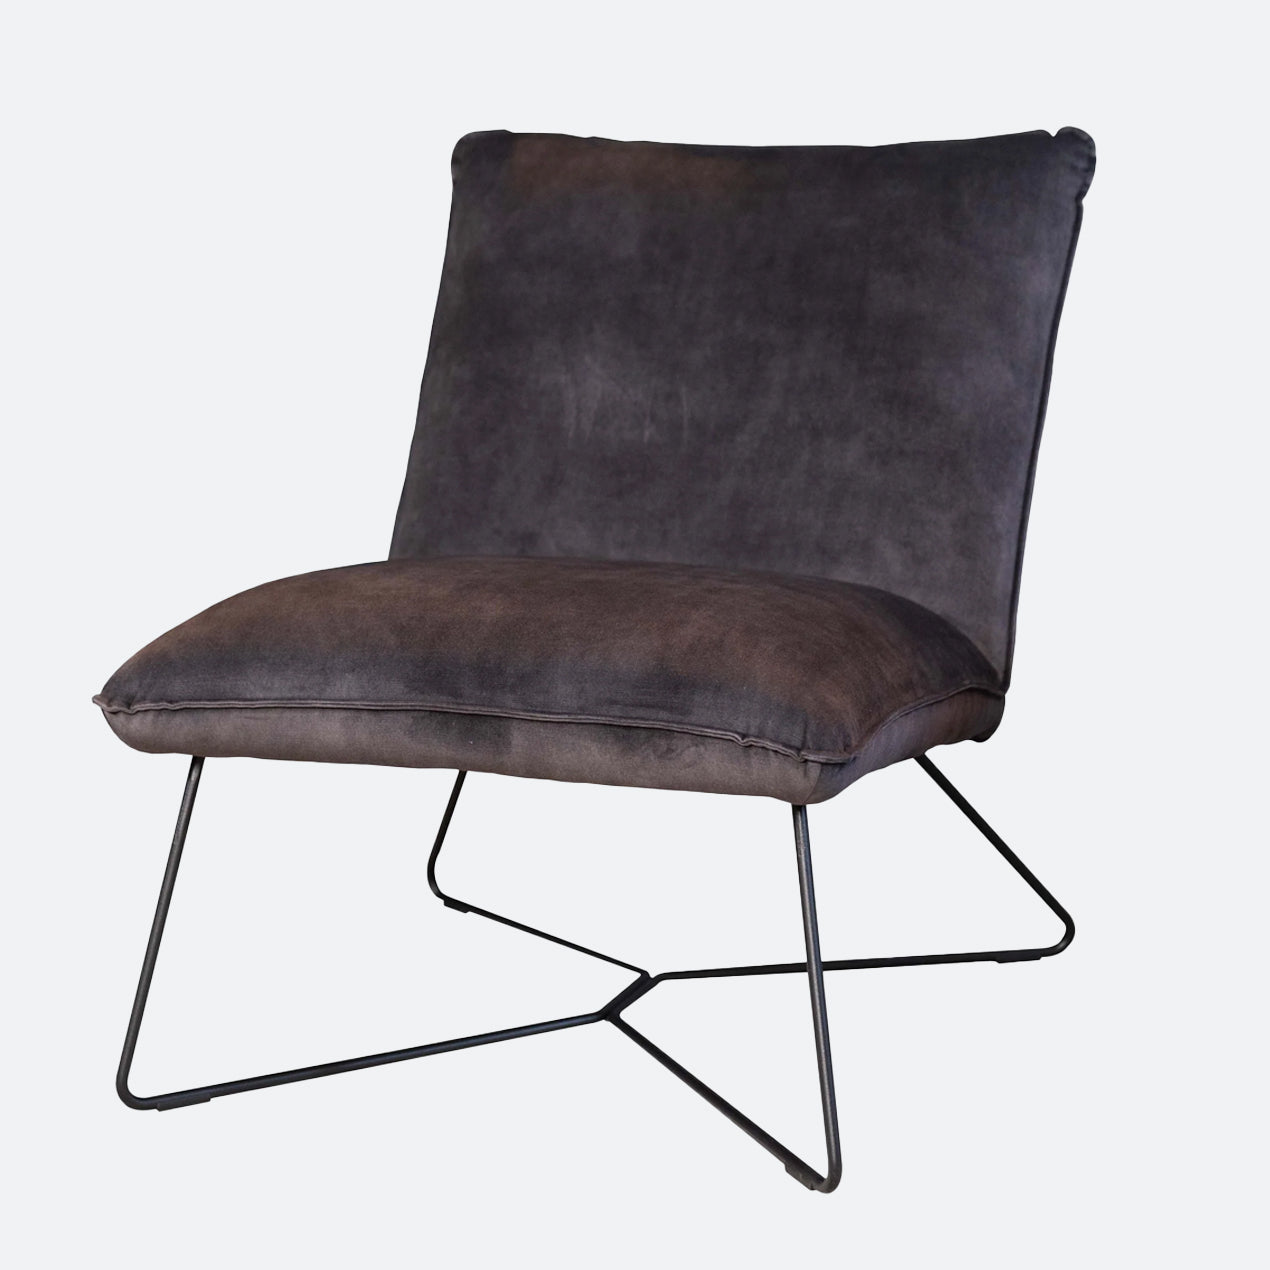 Goedkope fauteuils vind je in deze product collectie. Koop jouw fauteuil goedkoop voordelig en gemakkelijk online bij MeubelBaas.